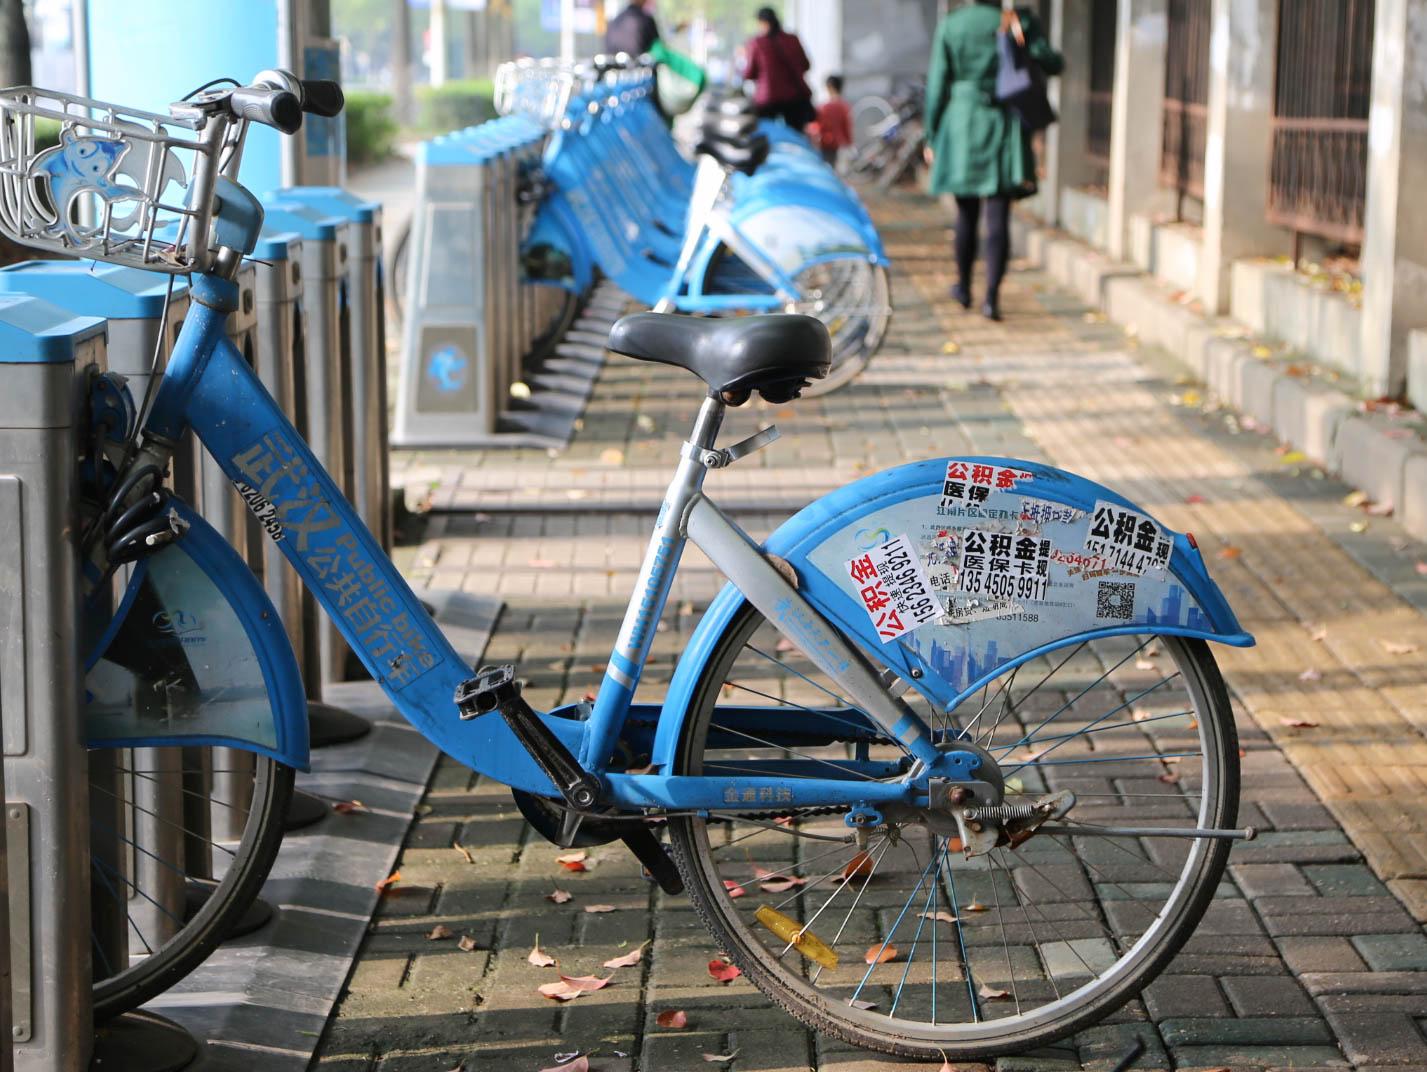 【随手拍】古玩城这一带人行道上共享单车倒了好几辆 - 黄贝家园 - 深圳论坛